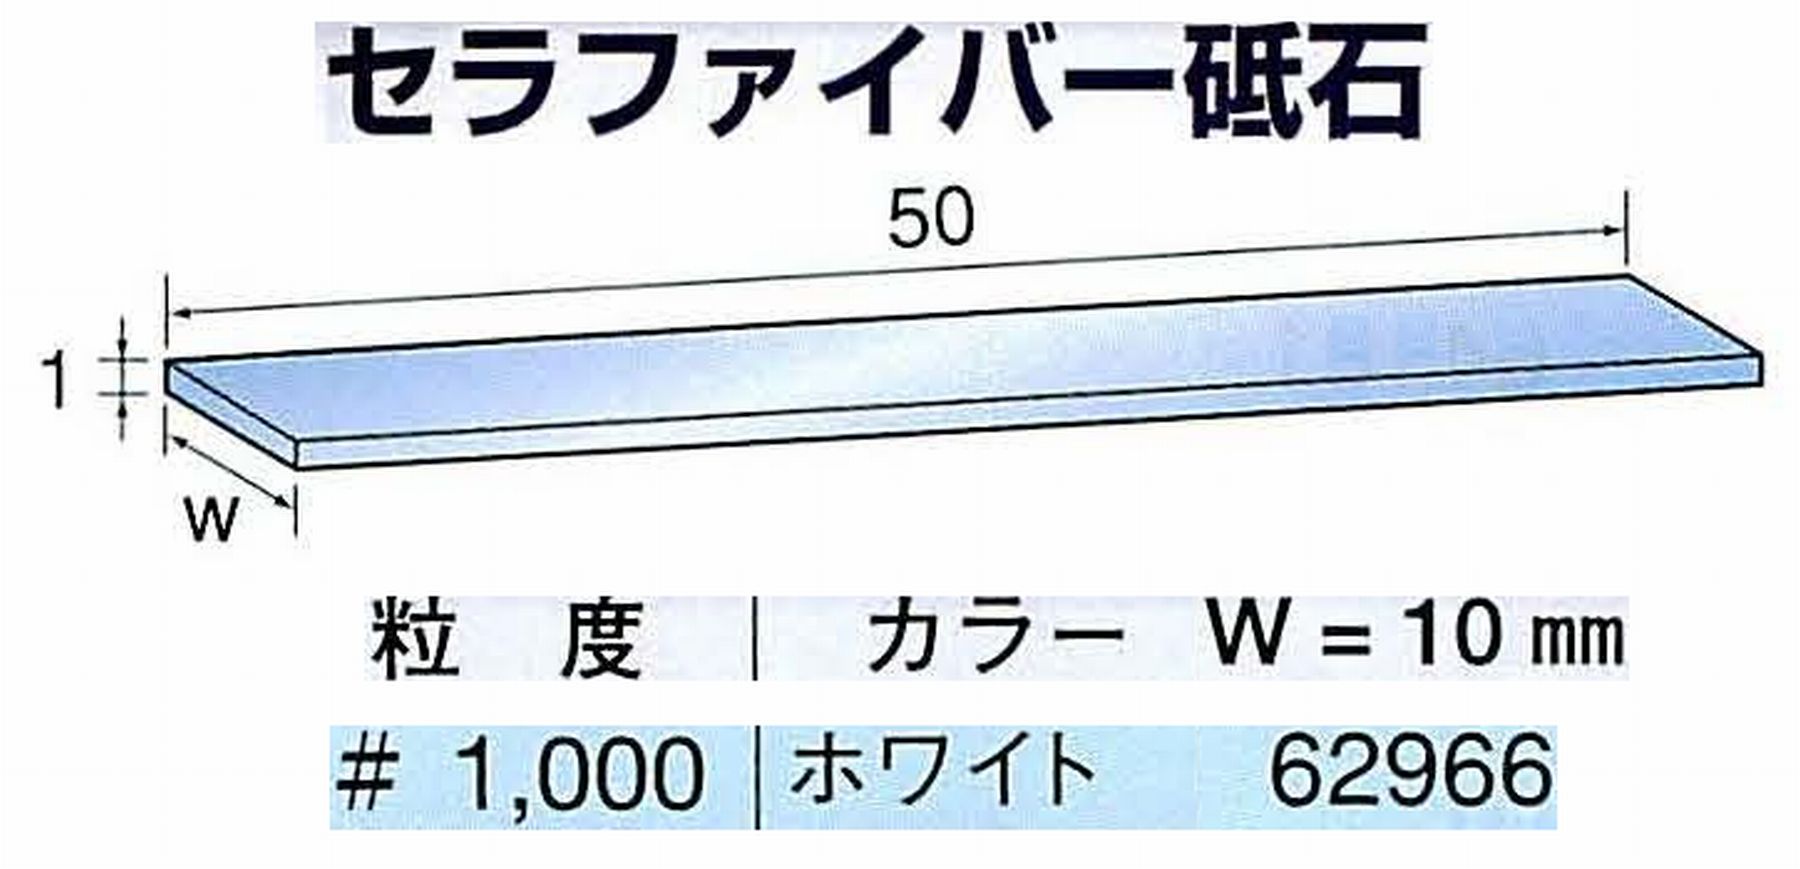 ナカニシ/NAKANISHI ペンシルタイプ 電動・エアーヤスリ(左右動) スイングラスター専用工具 セラファイバー砥石 62966